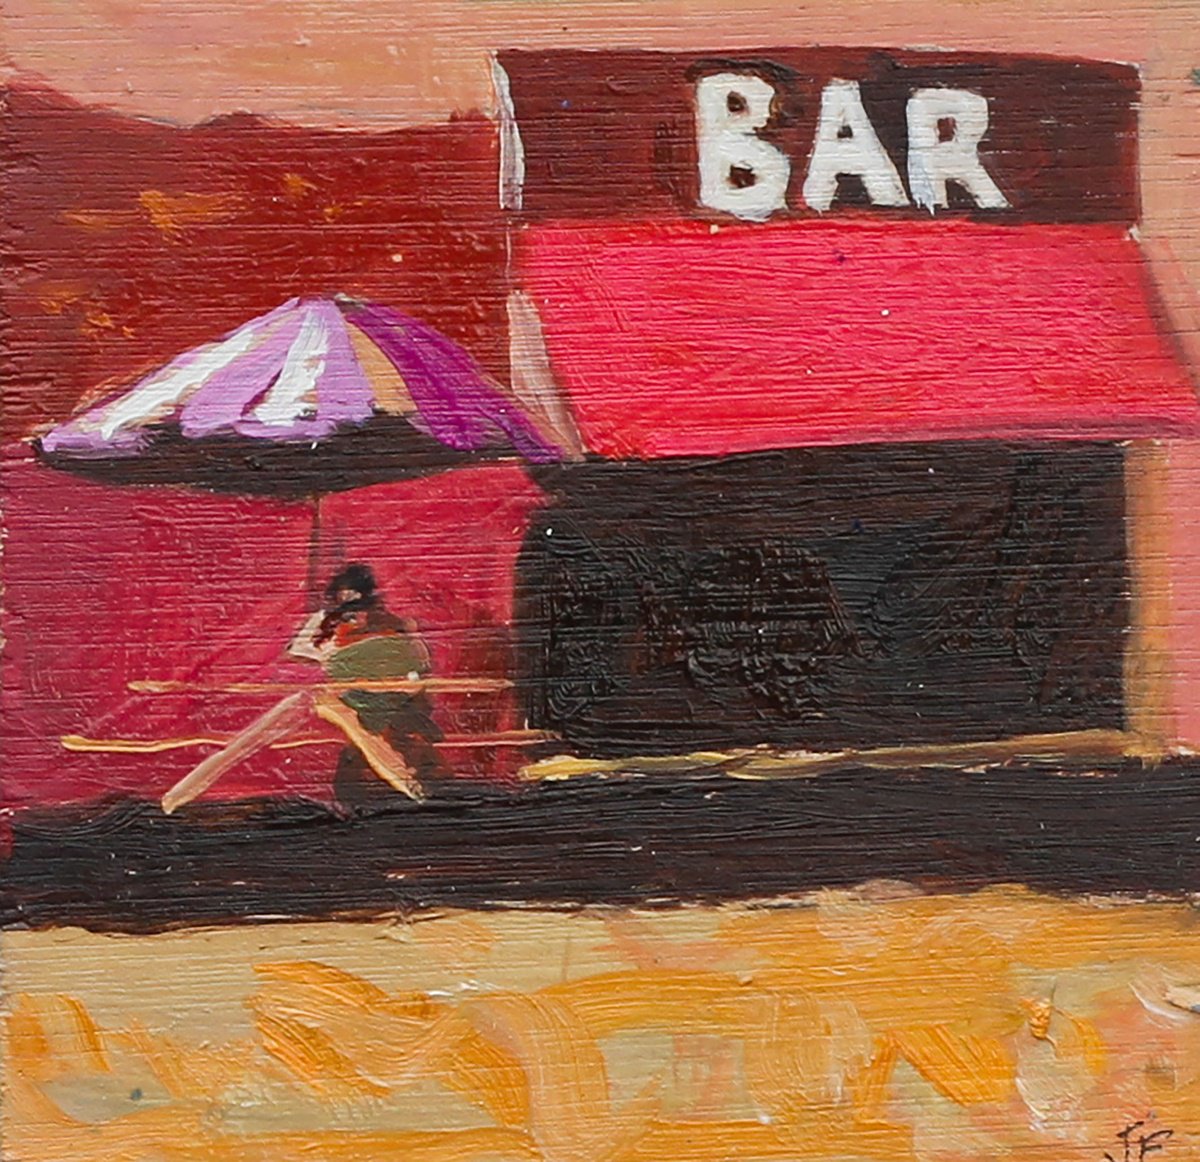 Beach Bar by Joe Mcdonald